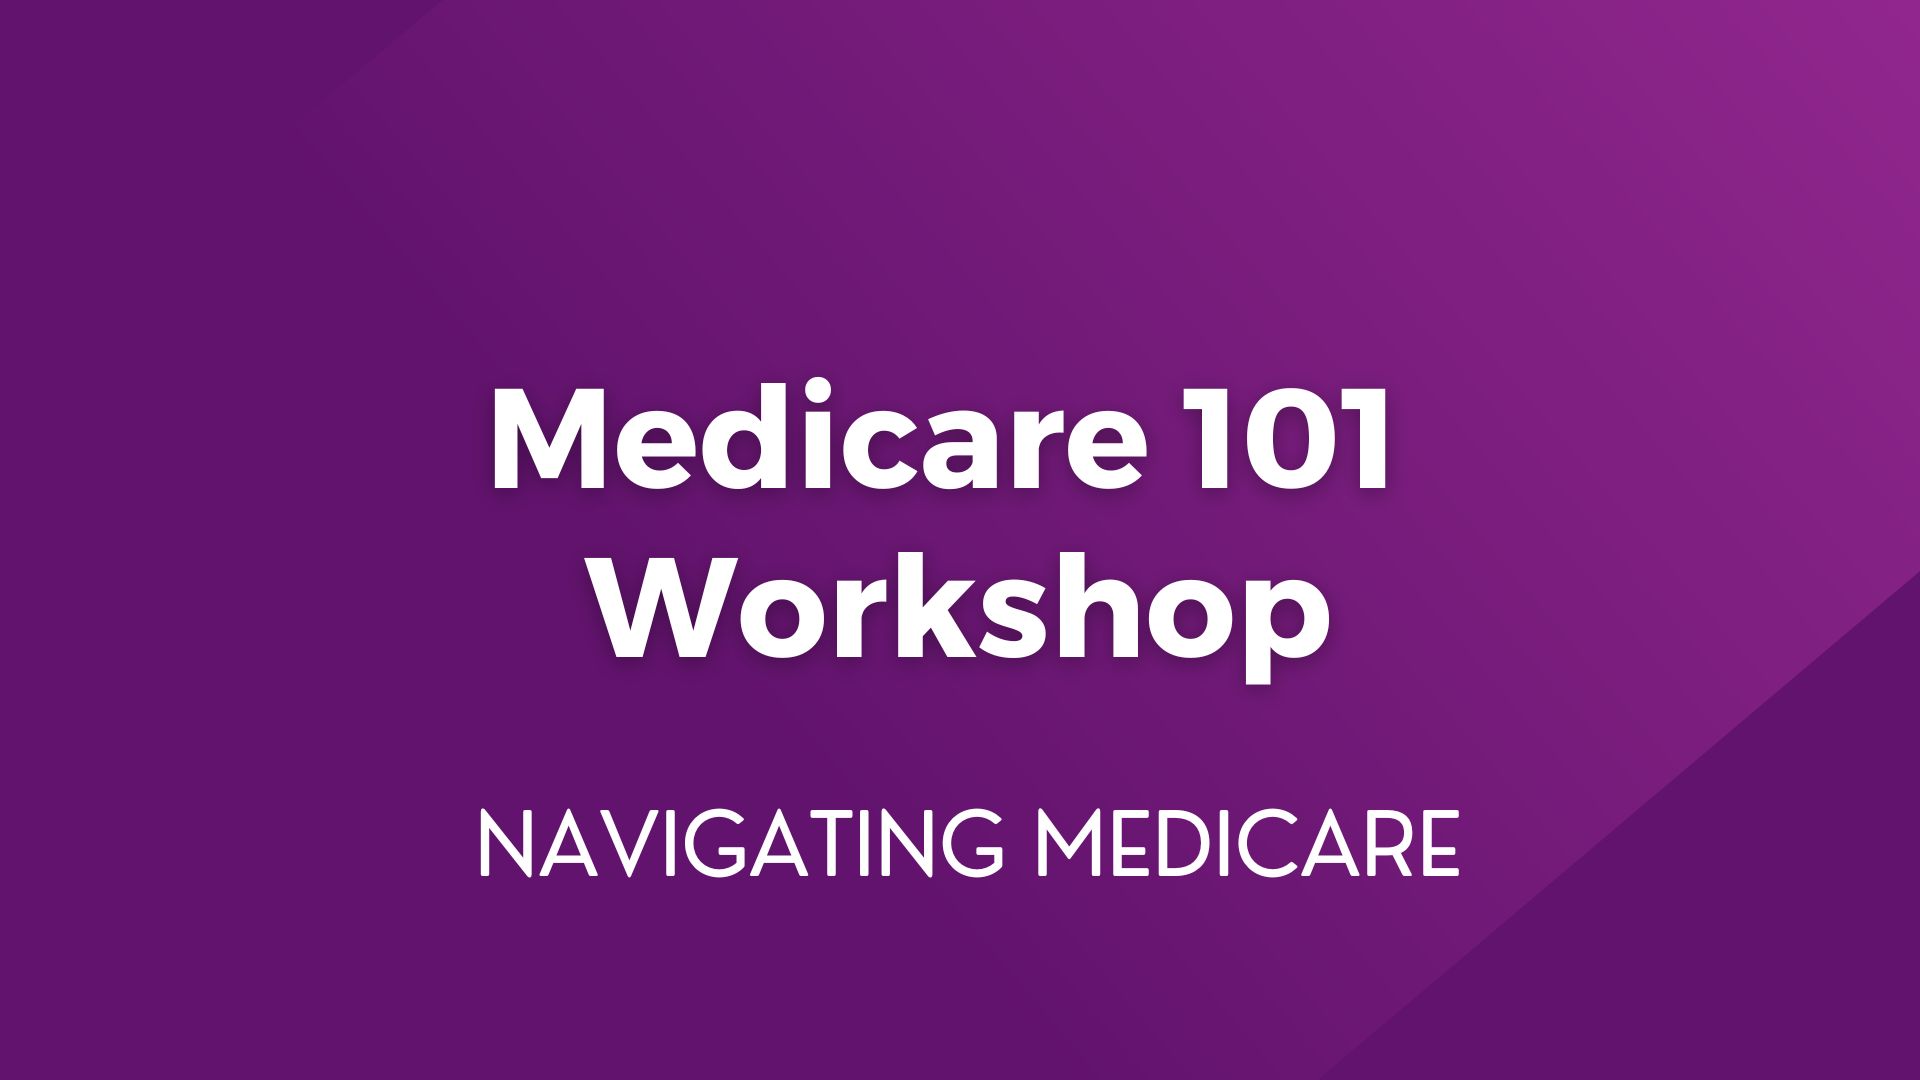 Medicare 101 Workshop – March 7